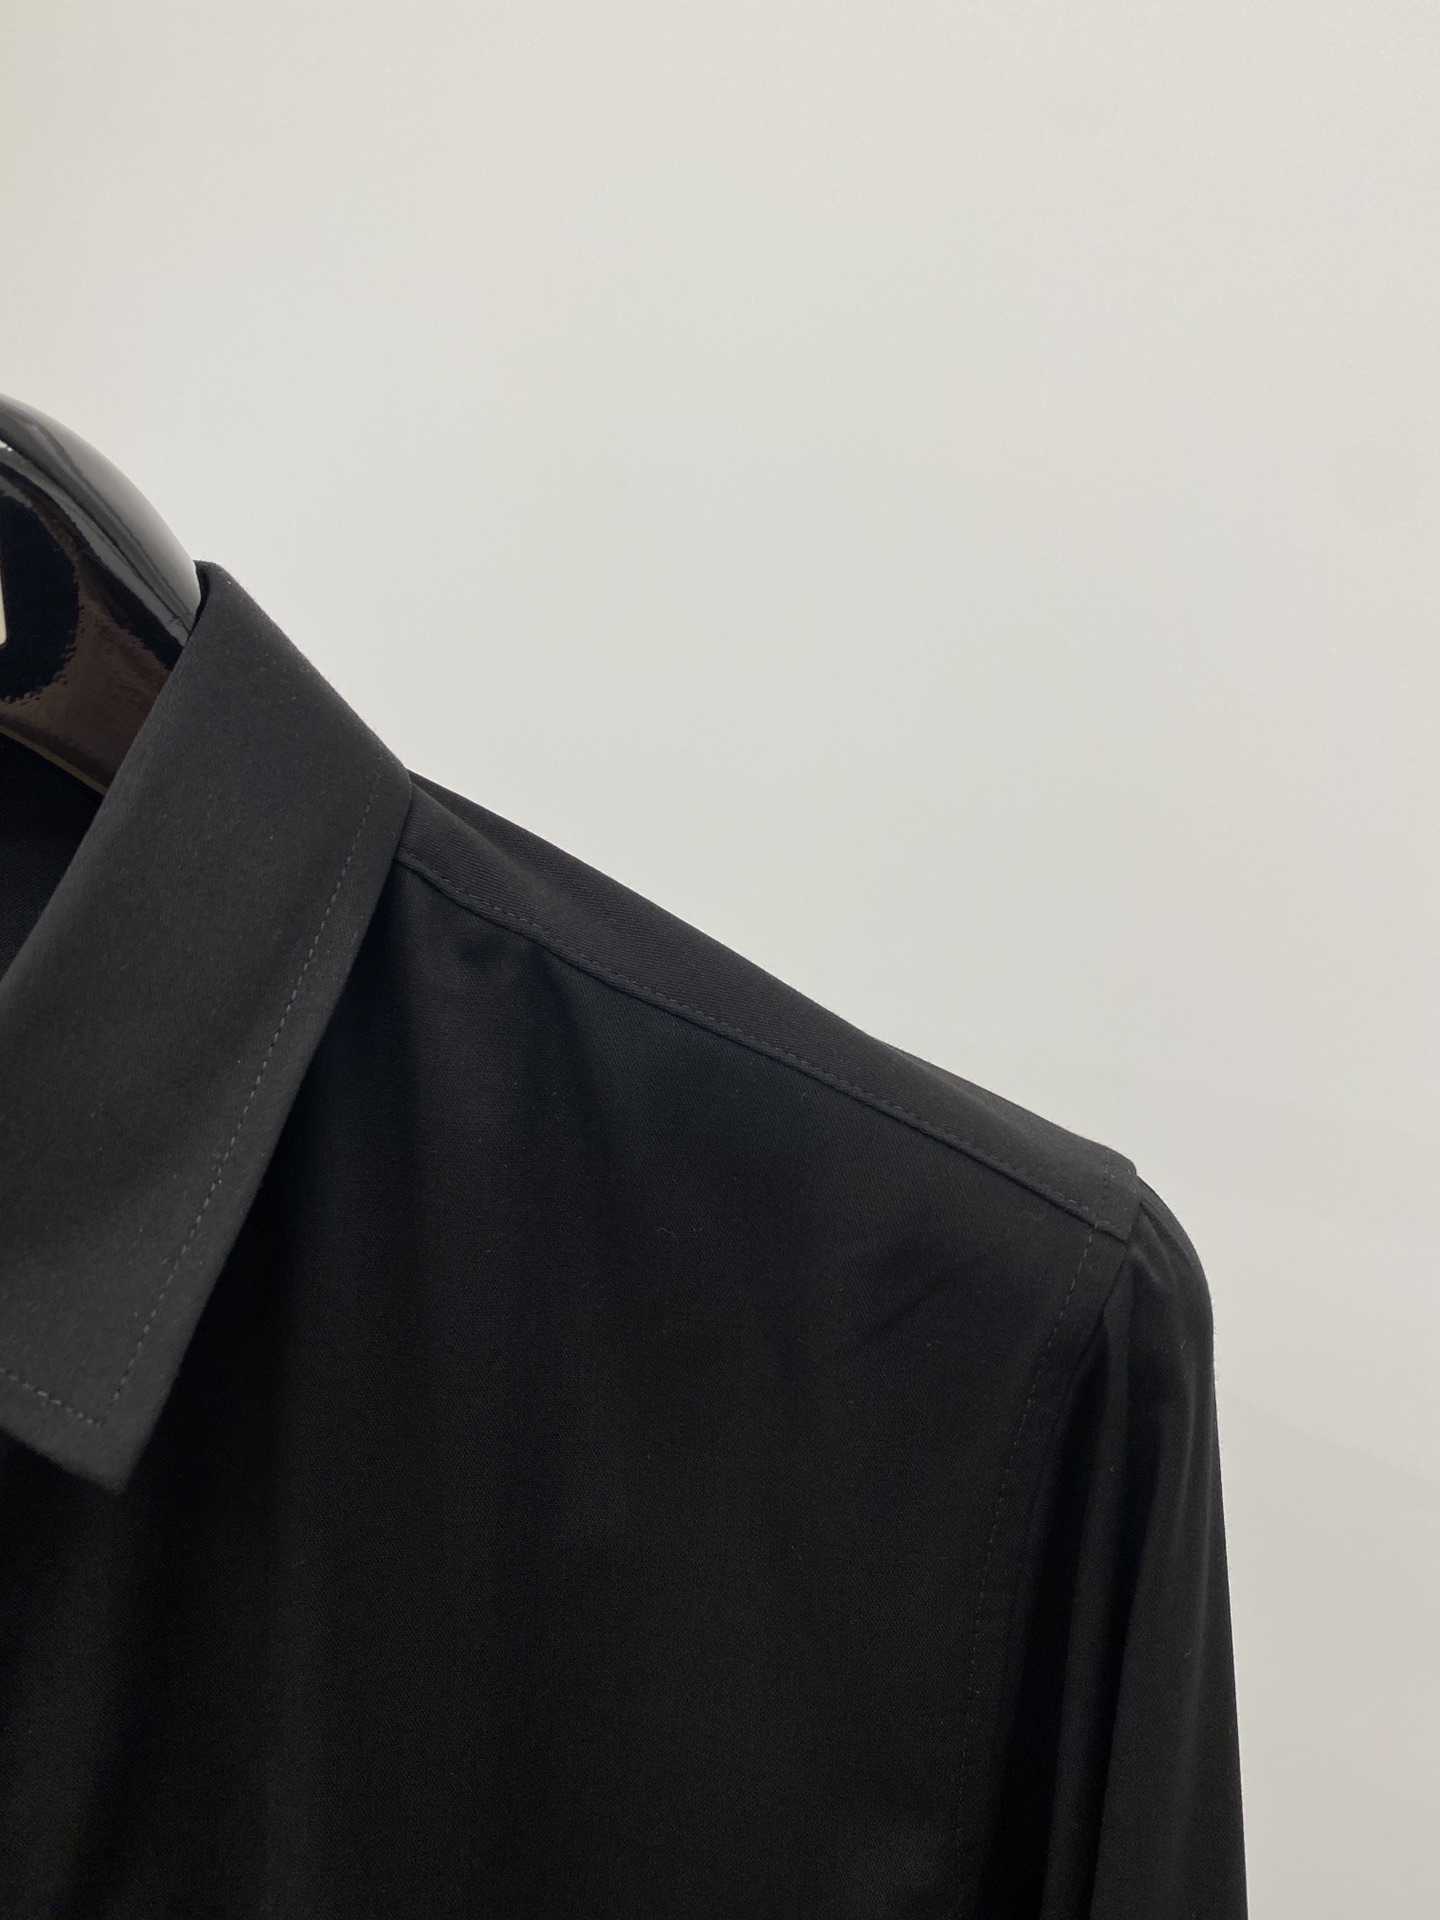 Berluti伯鲁蒂2024新款衬衫打造时装艺术感立体剪裁修身版型上身效果很帅气微彰显品位整体细节可以对